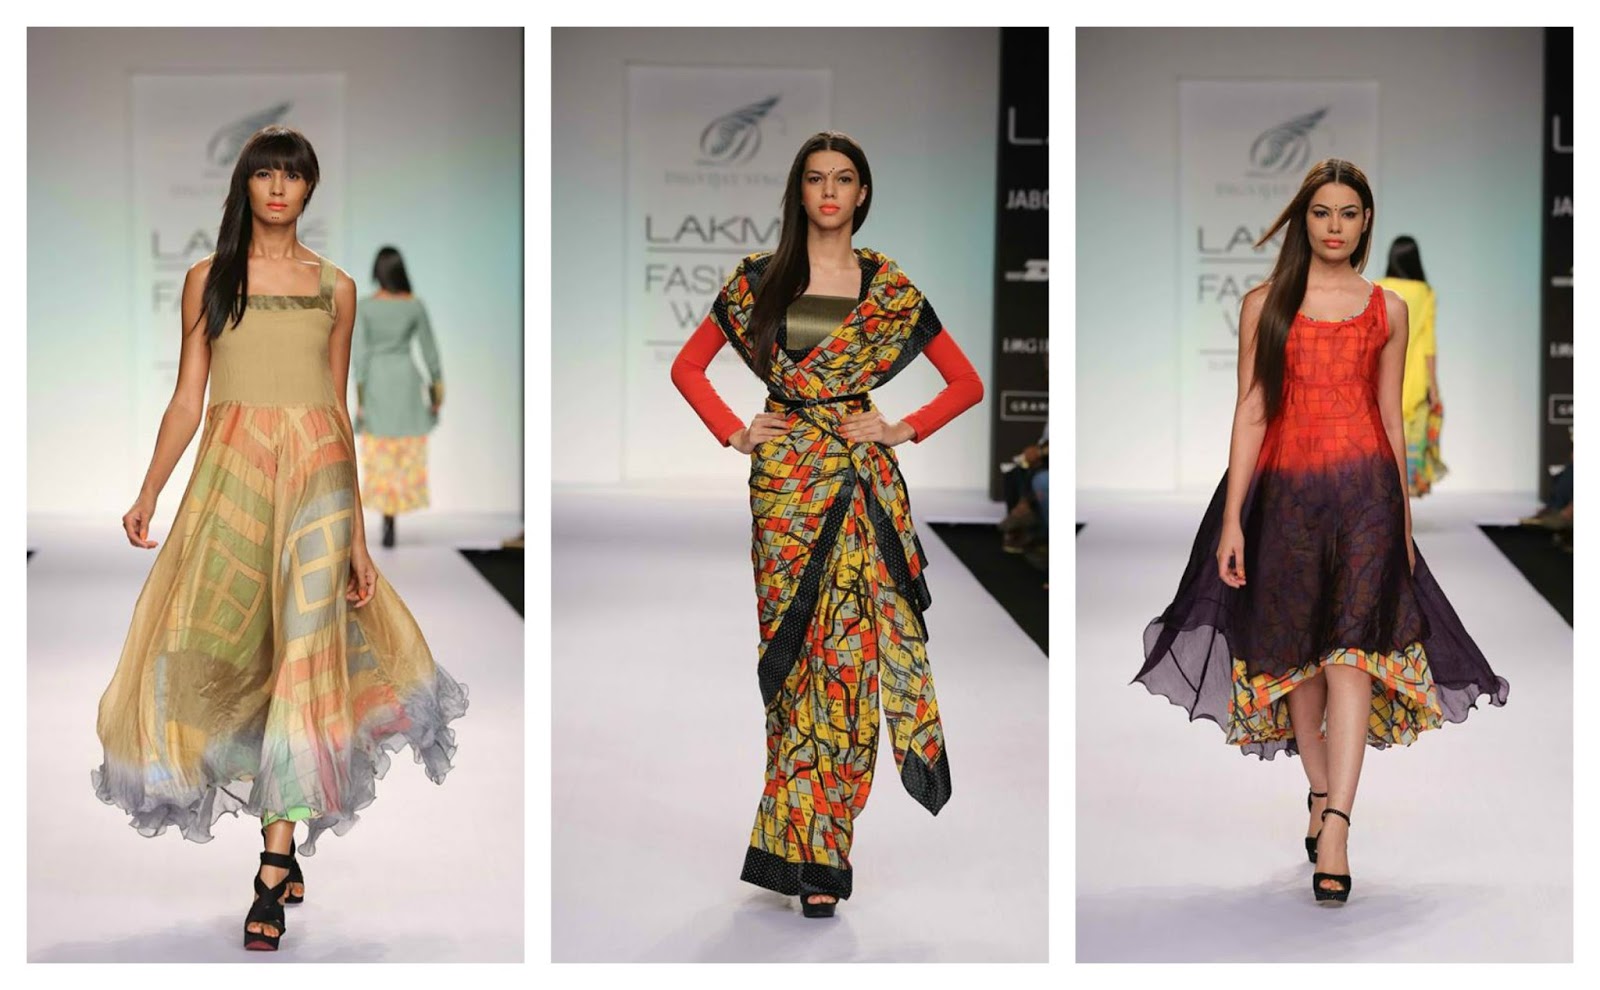 Lakme fashion week 2014 favorites